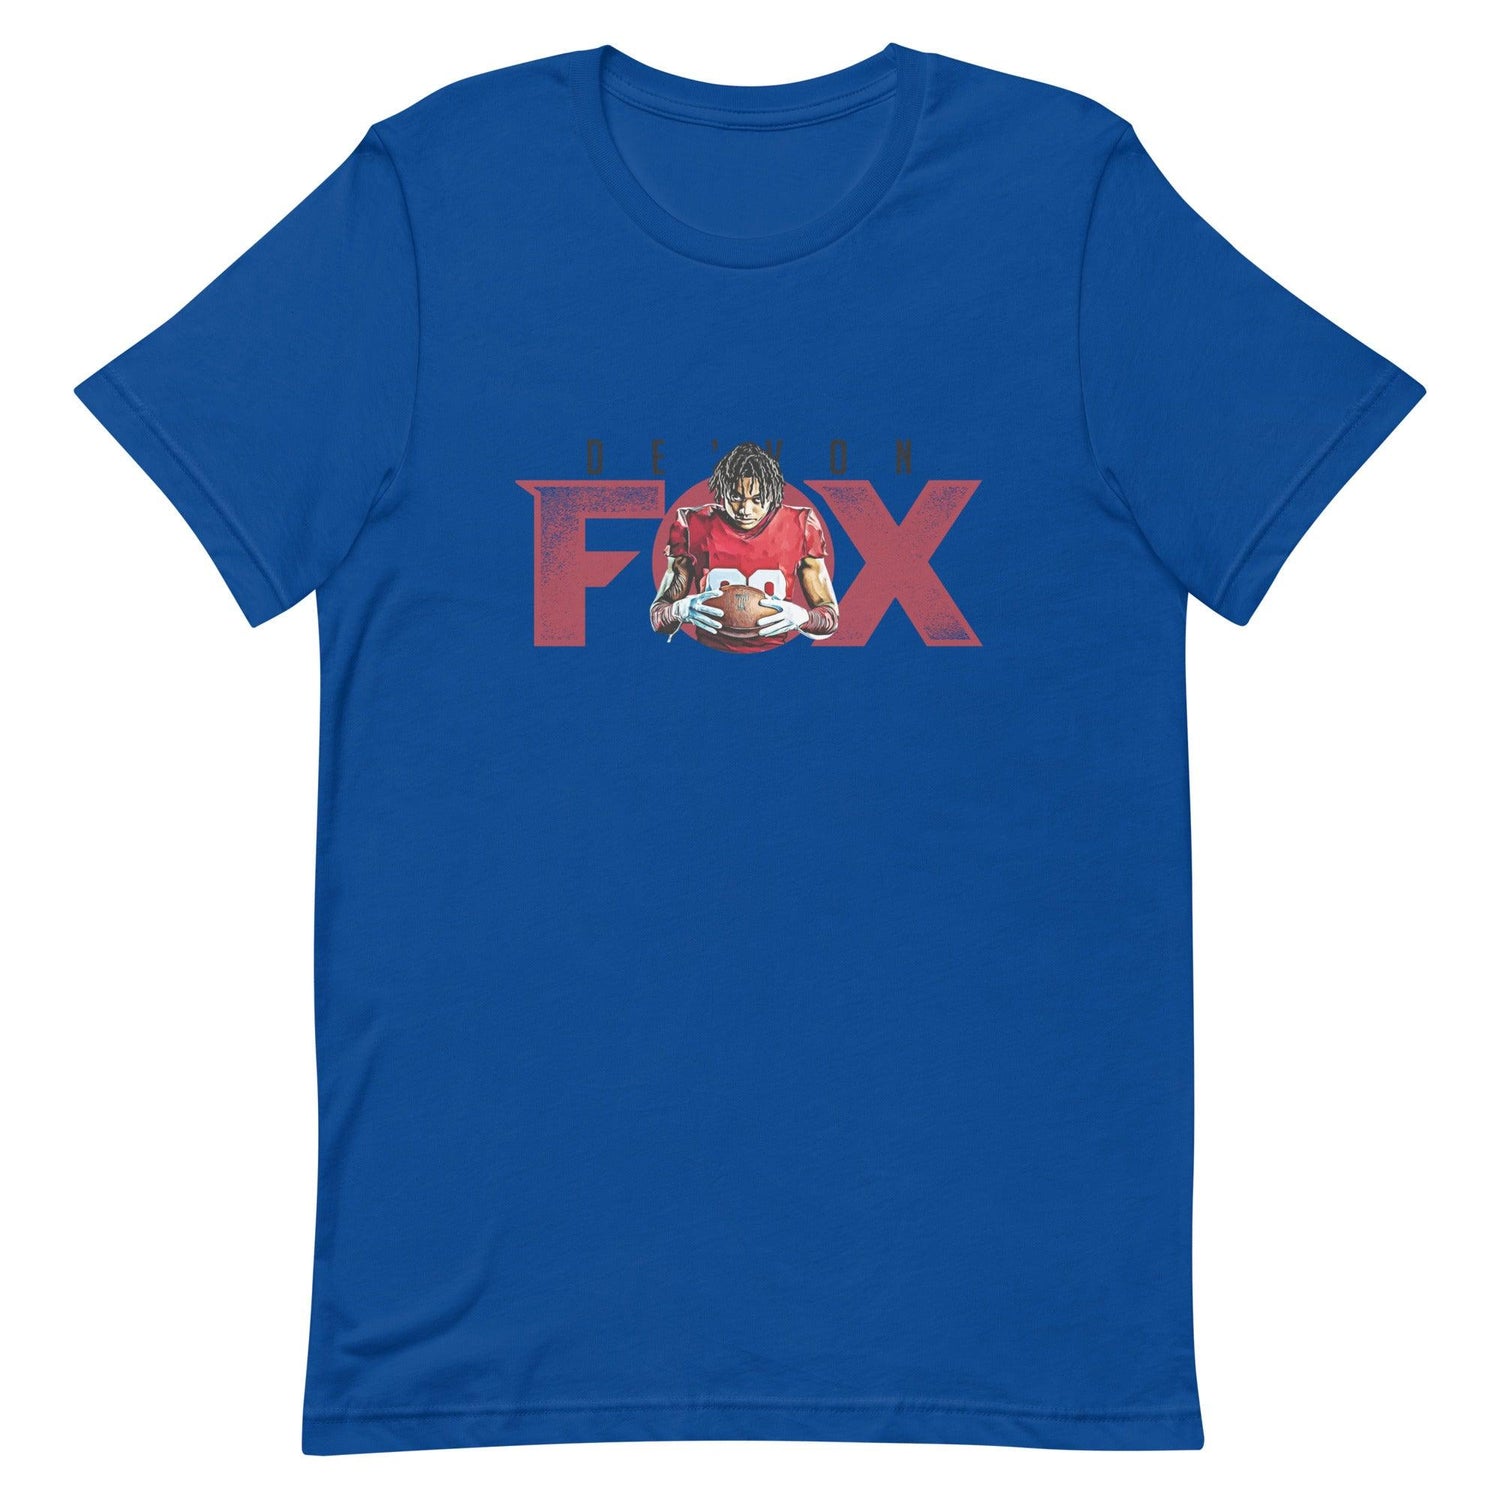 De'Von Fox "Gameday" t-shirt - Fan Arch